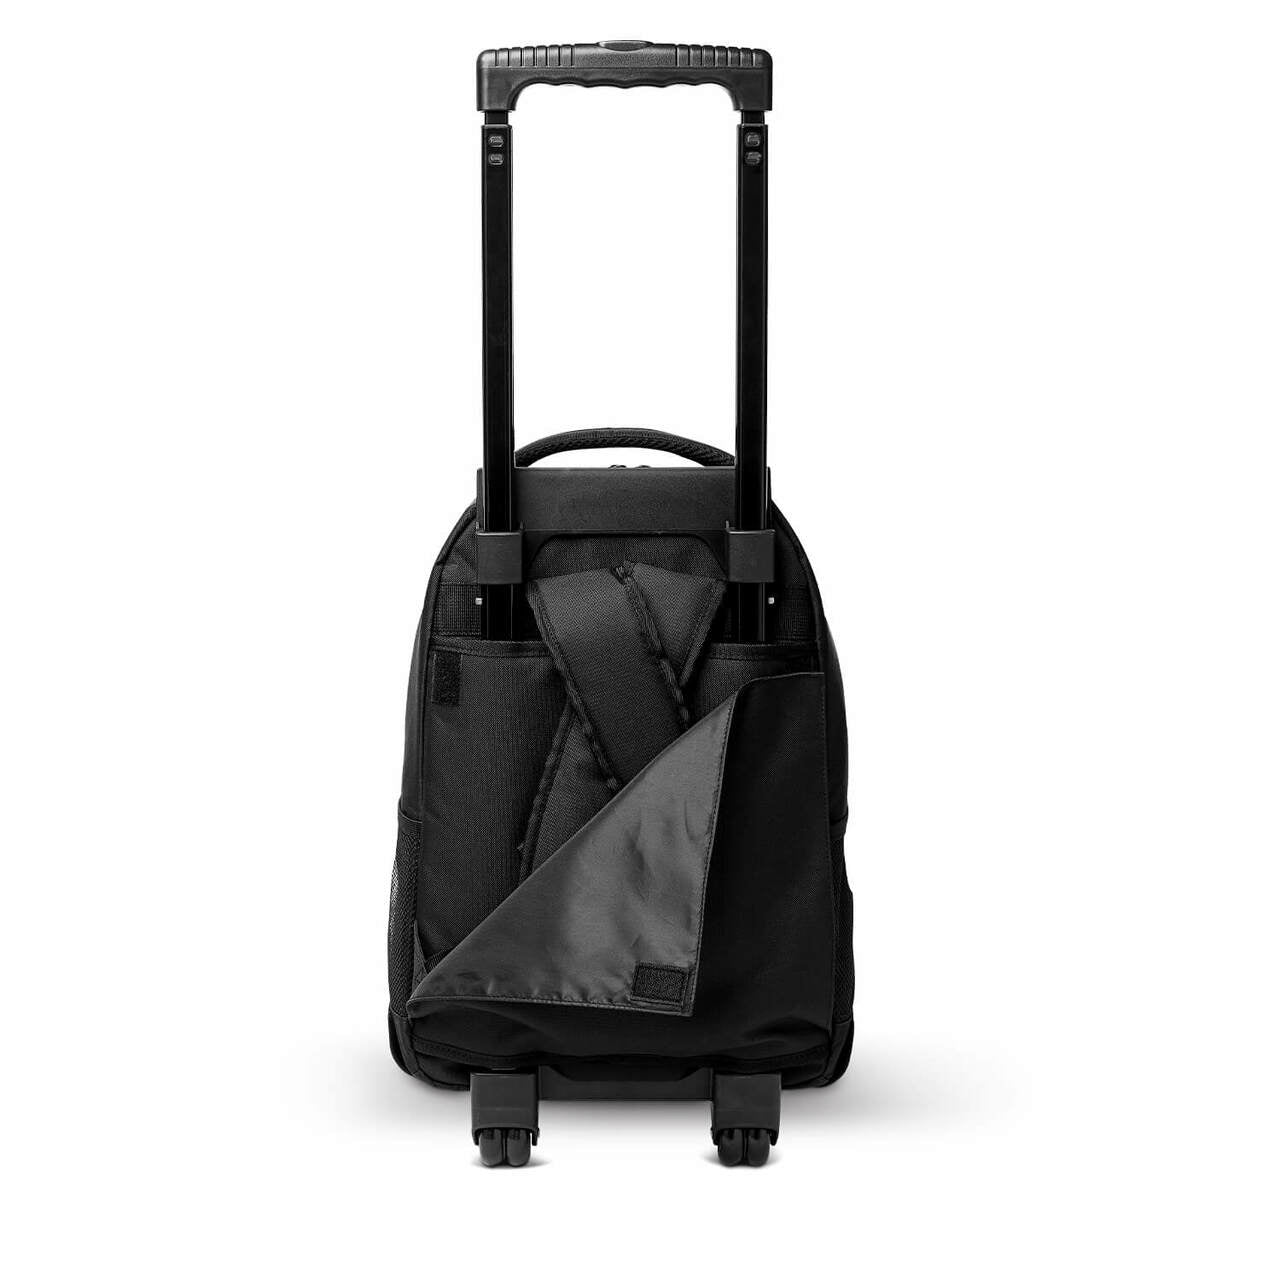 UNC Tar Heels 18" Wheeled Tool Bag